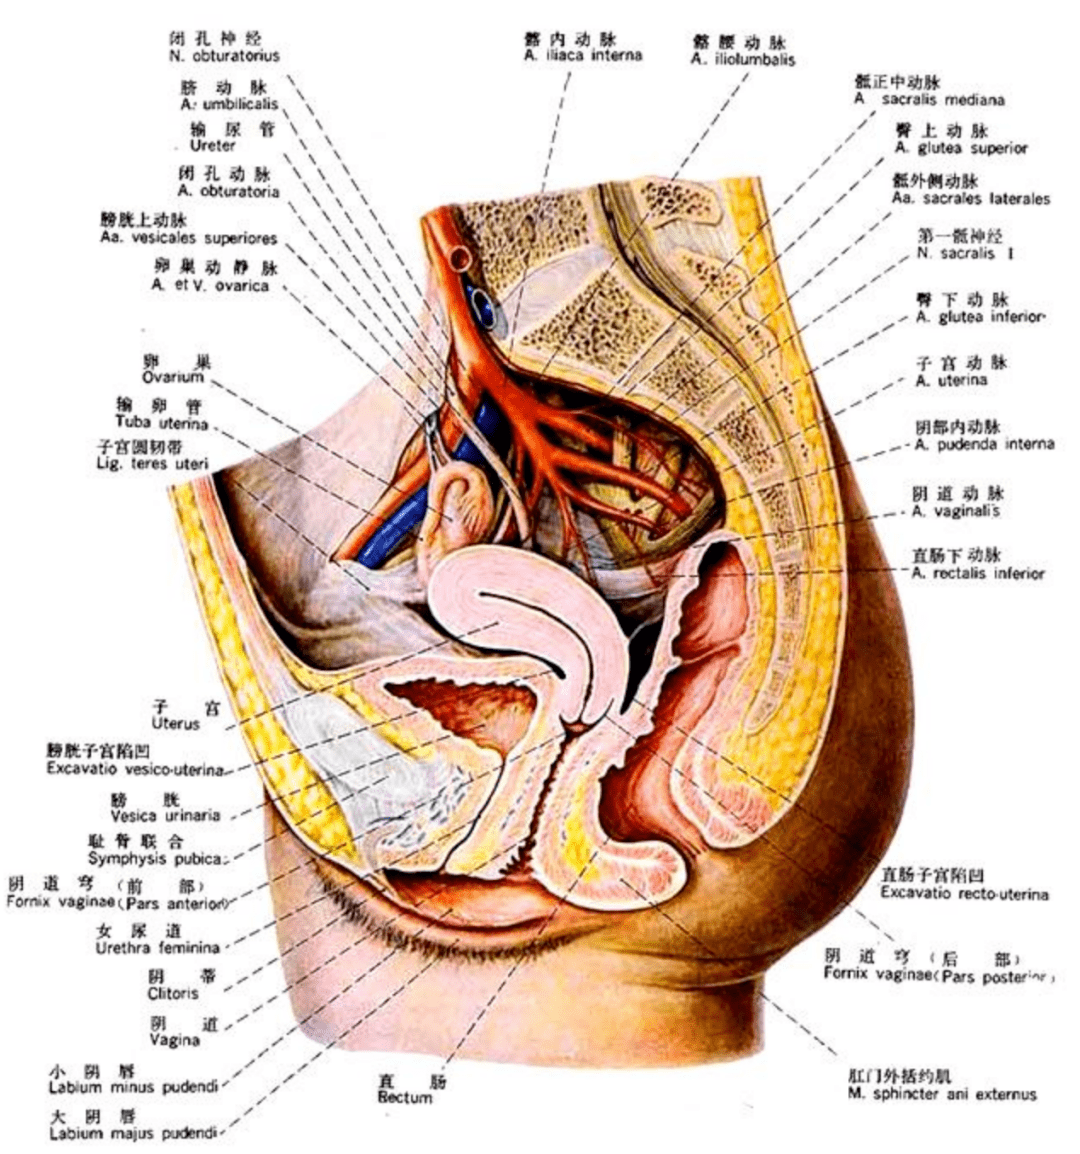 子宫,卵巢等生殖器官,还有小肠,大肠等消化系统器官,以及膀胱等泌尿